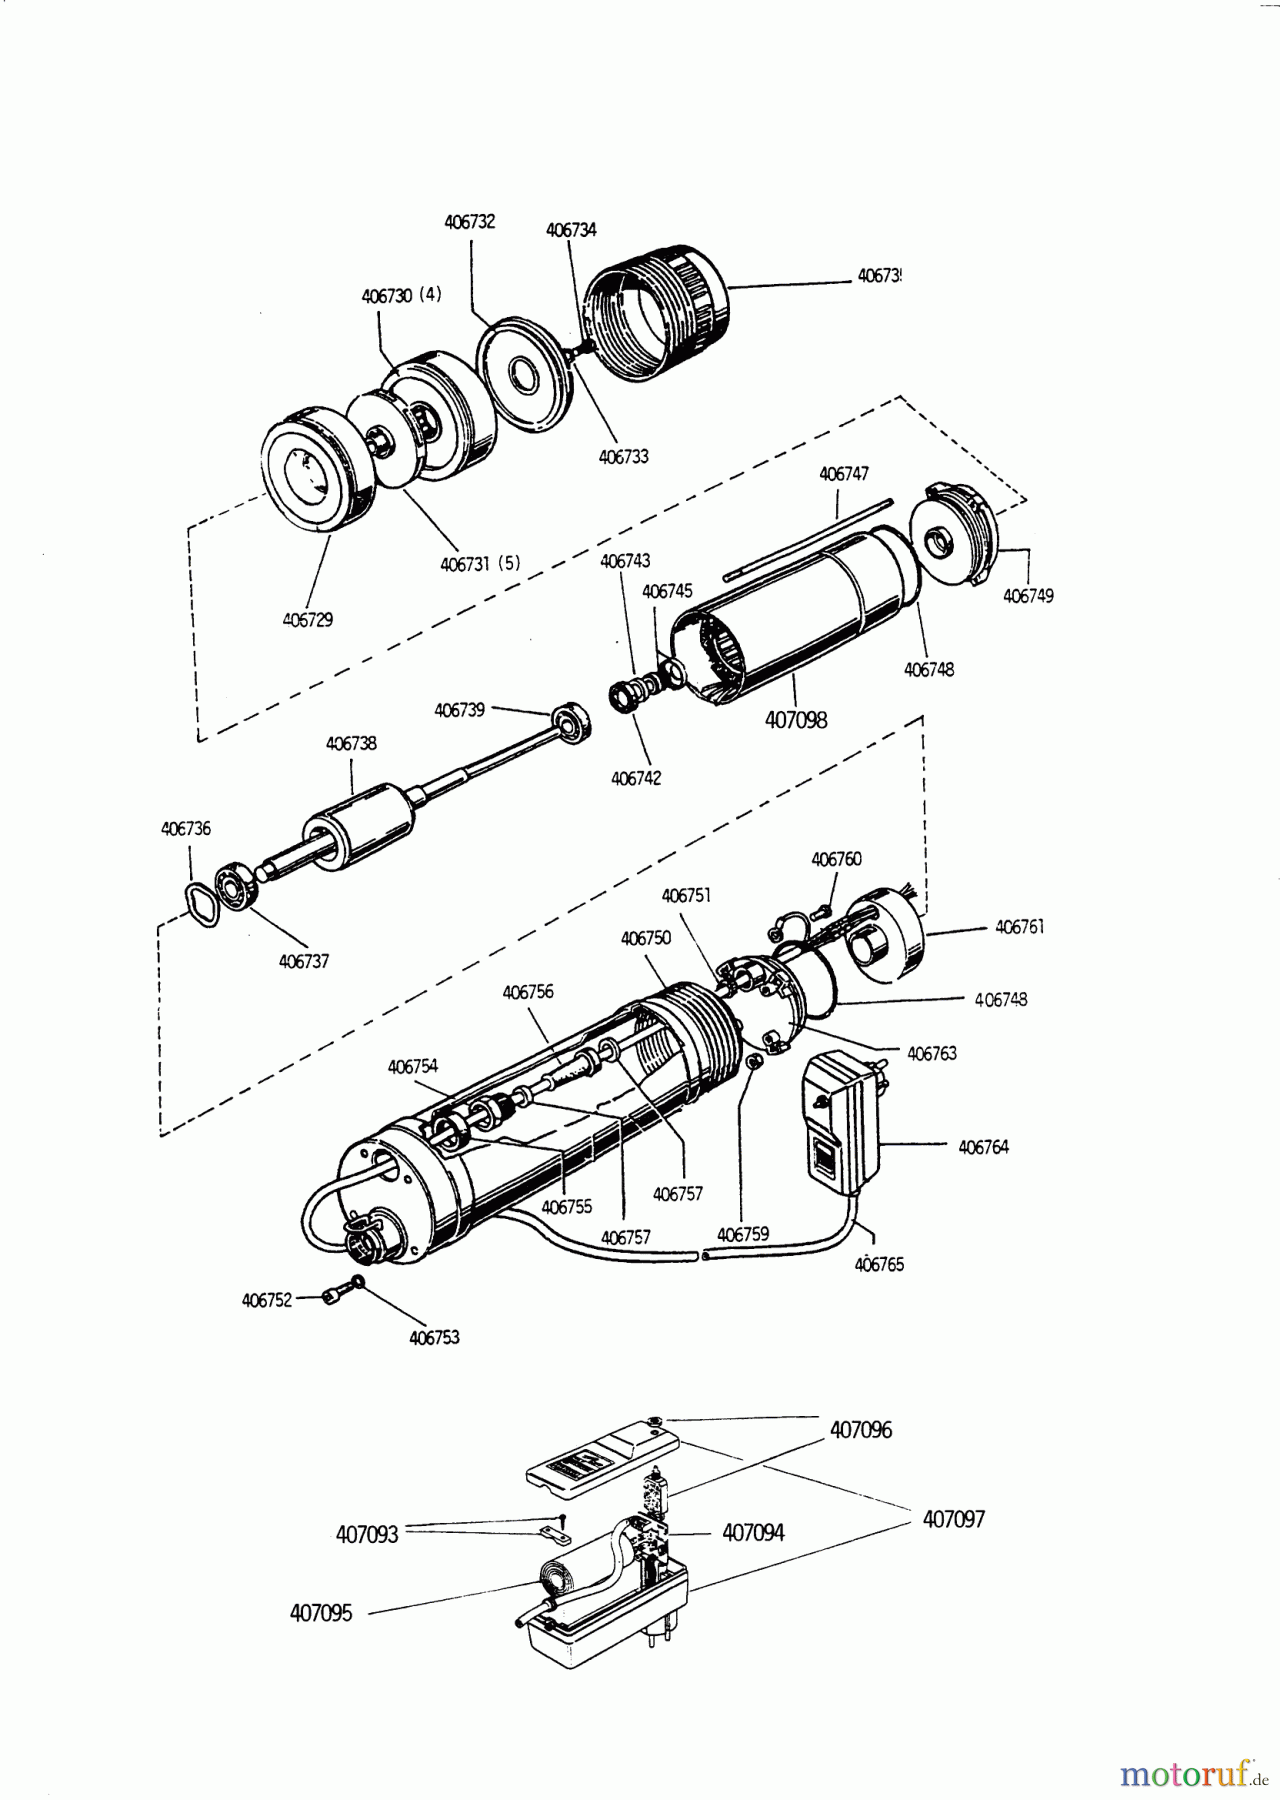  AL-KO Wassertechnik Tauchdruckpumpen TBM 1400-5 Seite 1